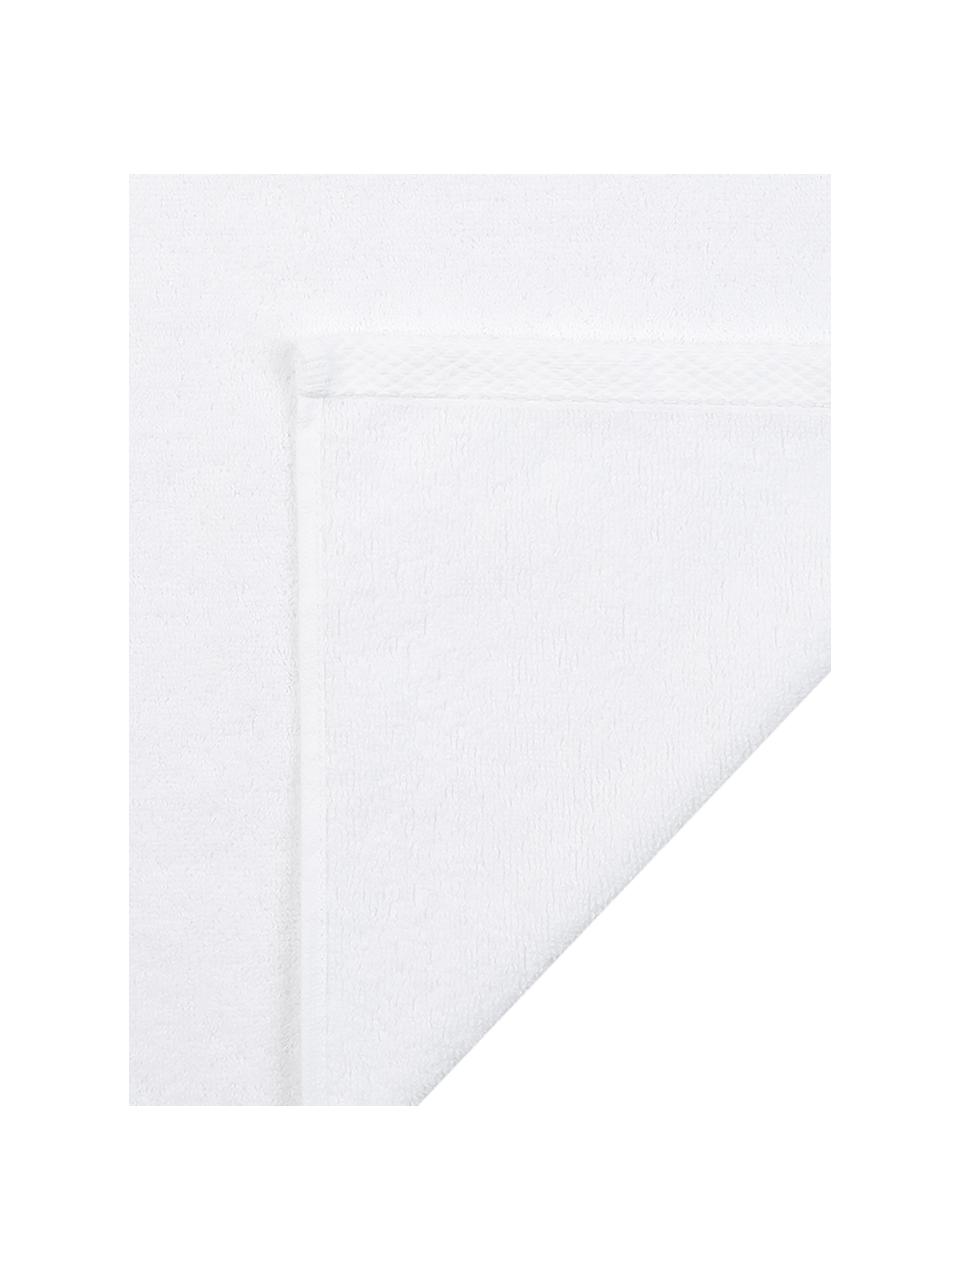 Súprava jednofarebných uterákov Comfort, 3 diely, Biela, Súprava s rôznymi veľkosťami